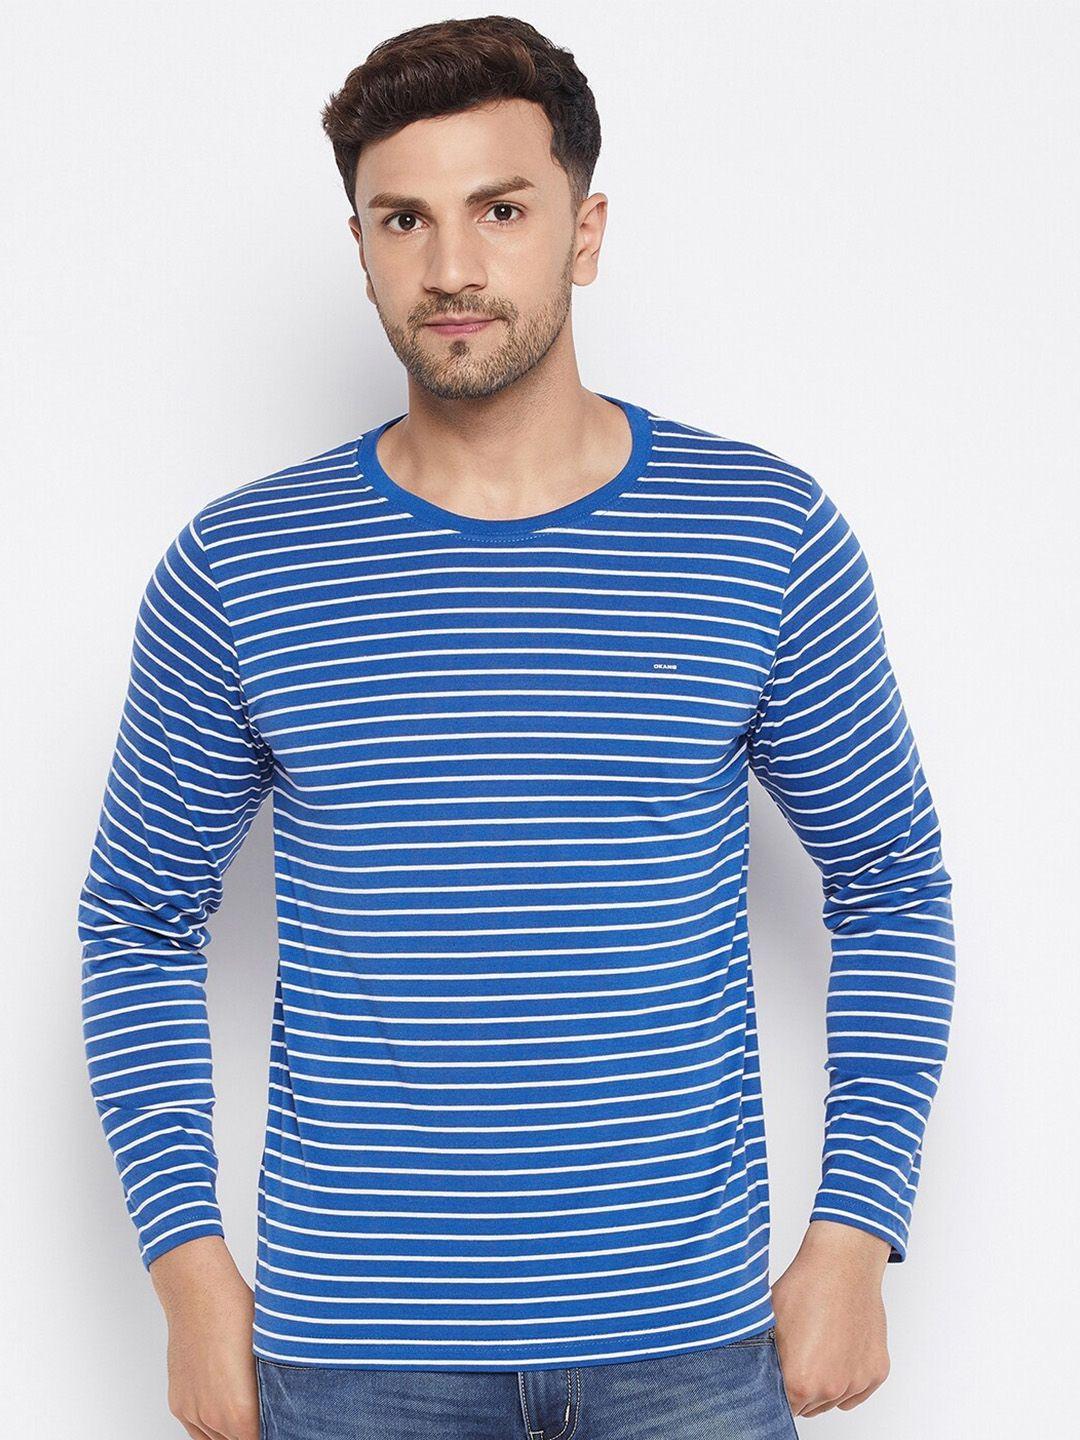 okane men blue striped t-shirt